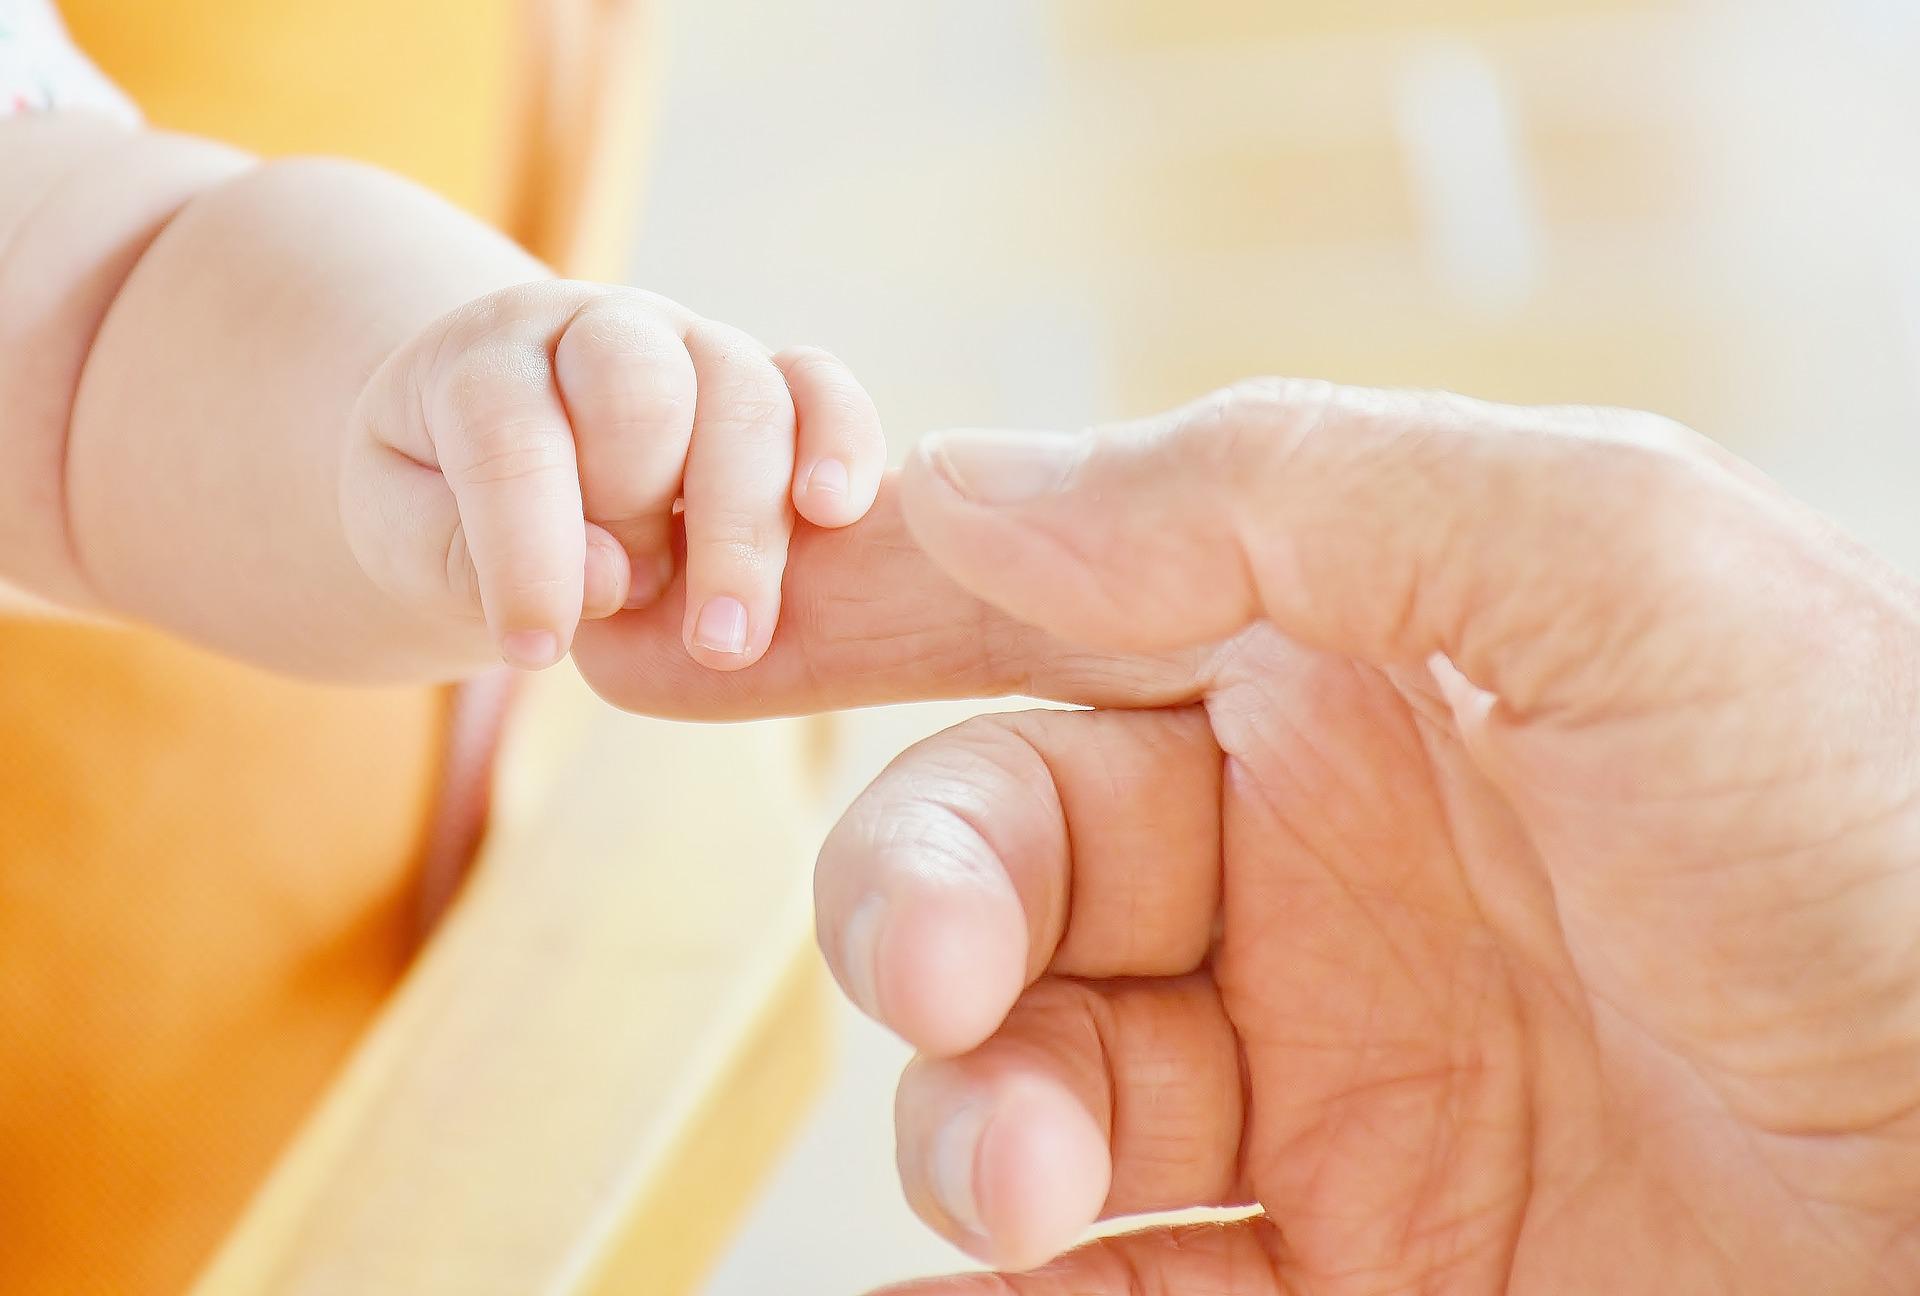 infant holding finger of parent